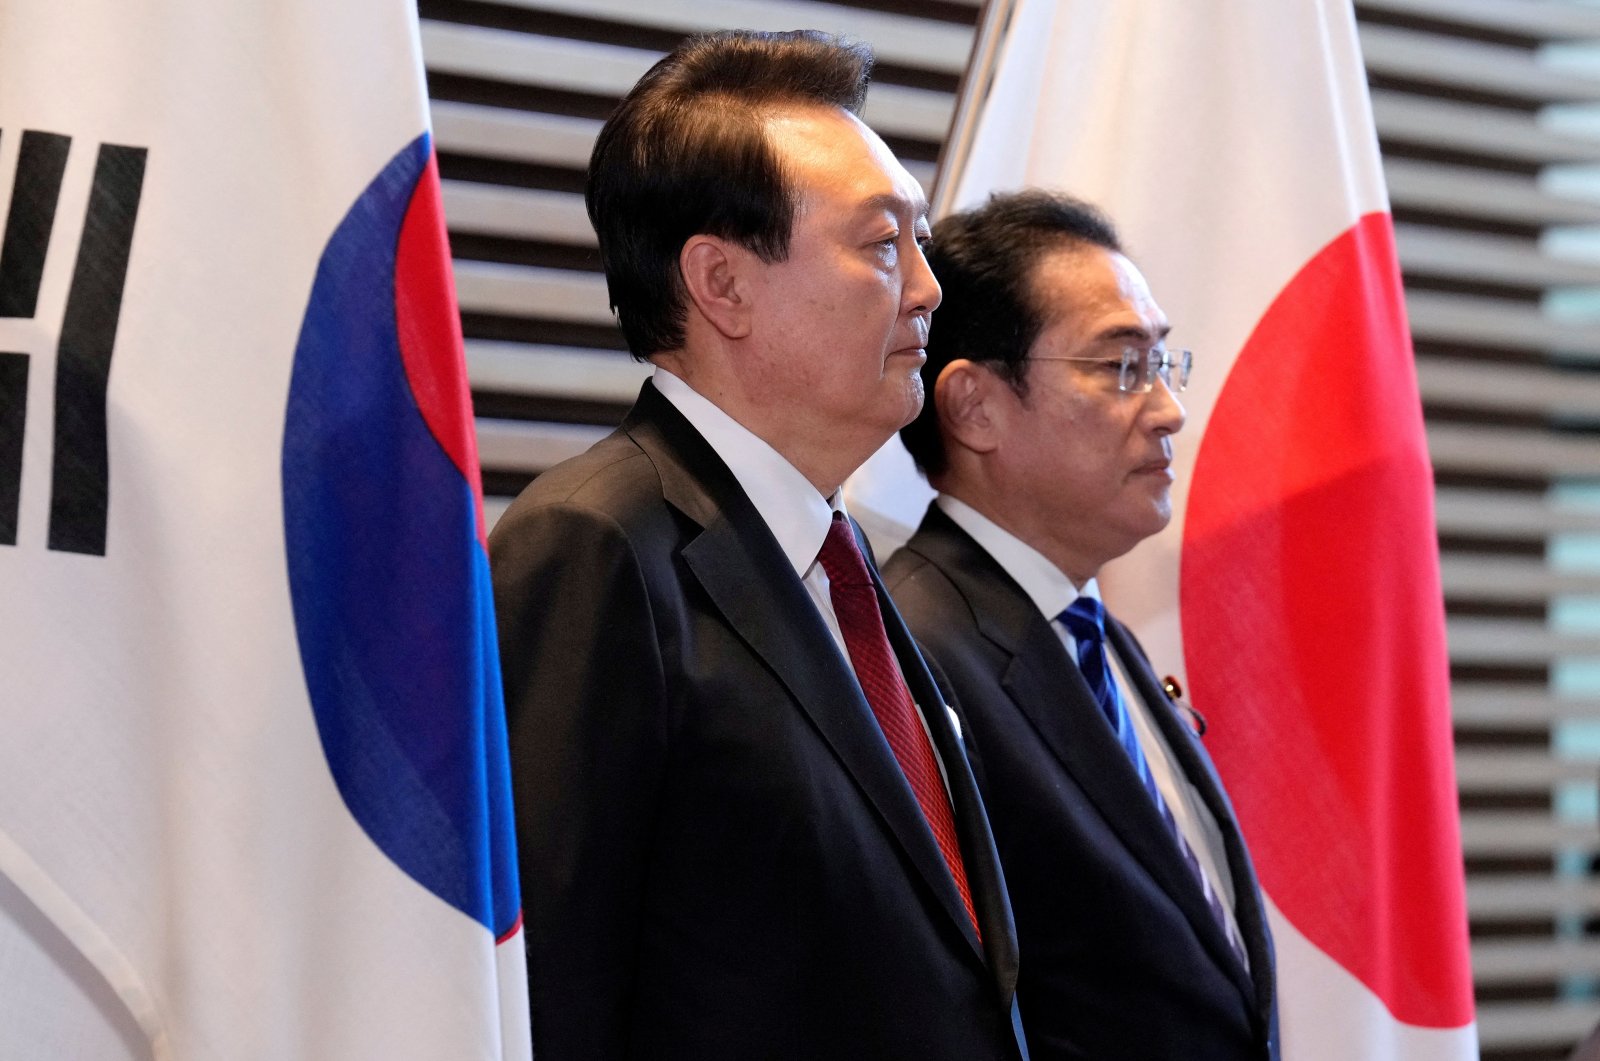 S. Korea, Jepang menekan tombol reset pada hubungan bilateral di KTT Tokyo